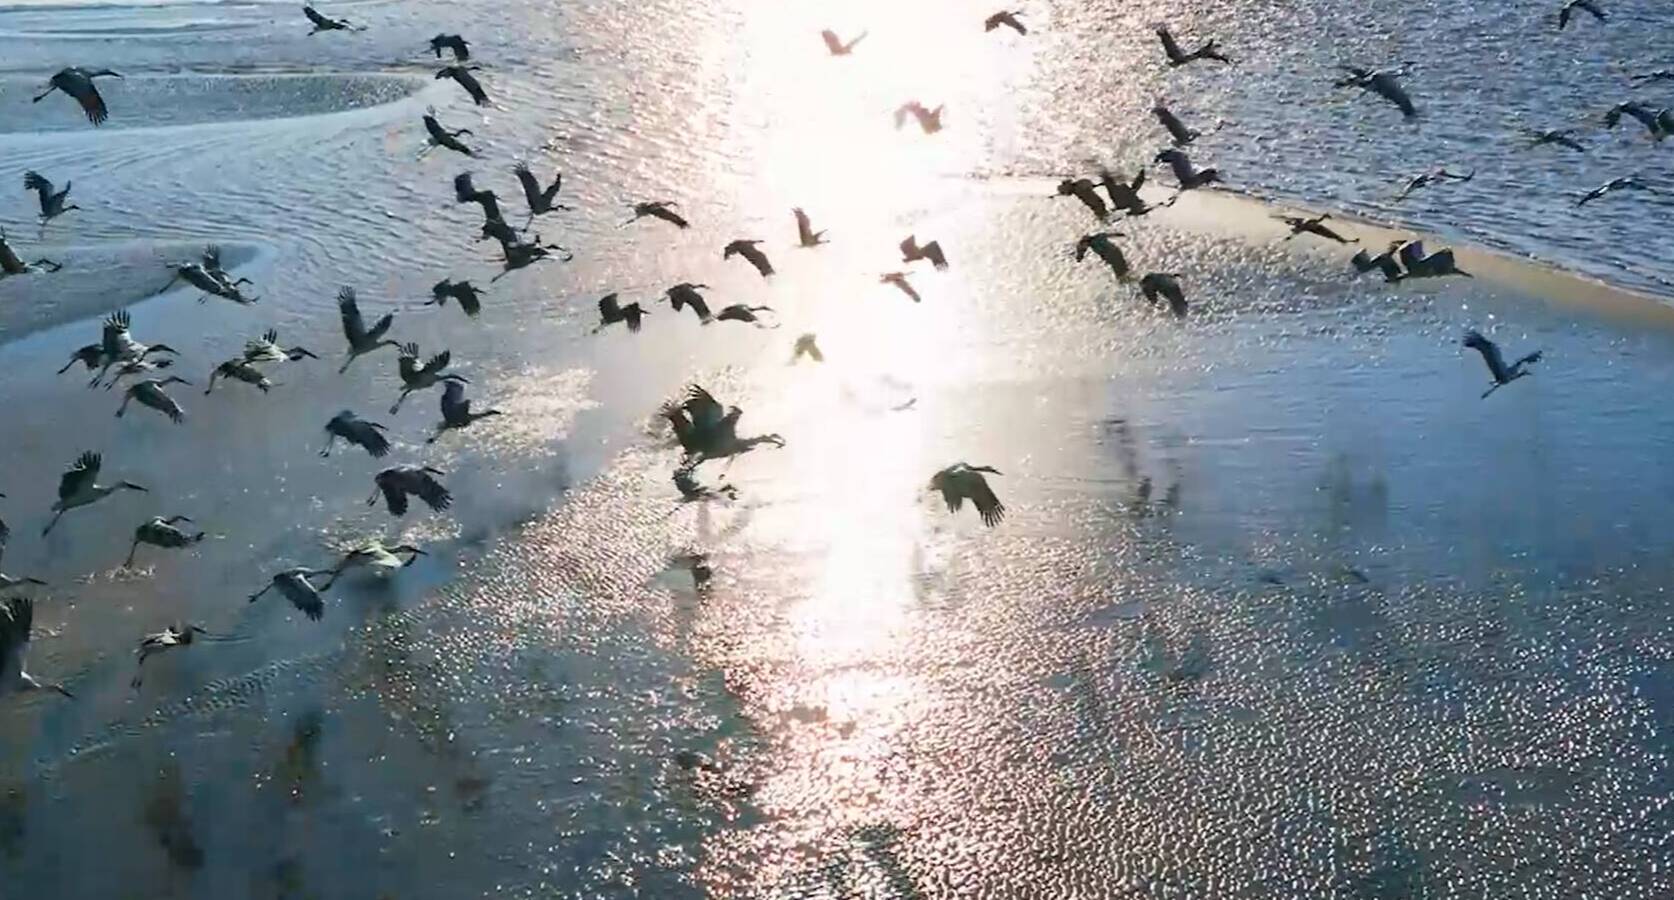 闪电评论丨《大河之洲》用光影解锁齐鲁大地人与自然和谐共生之美